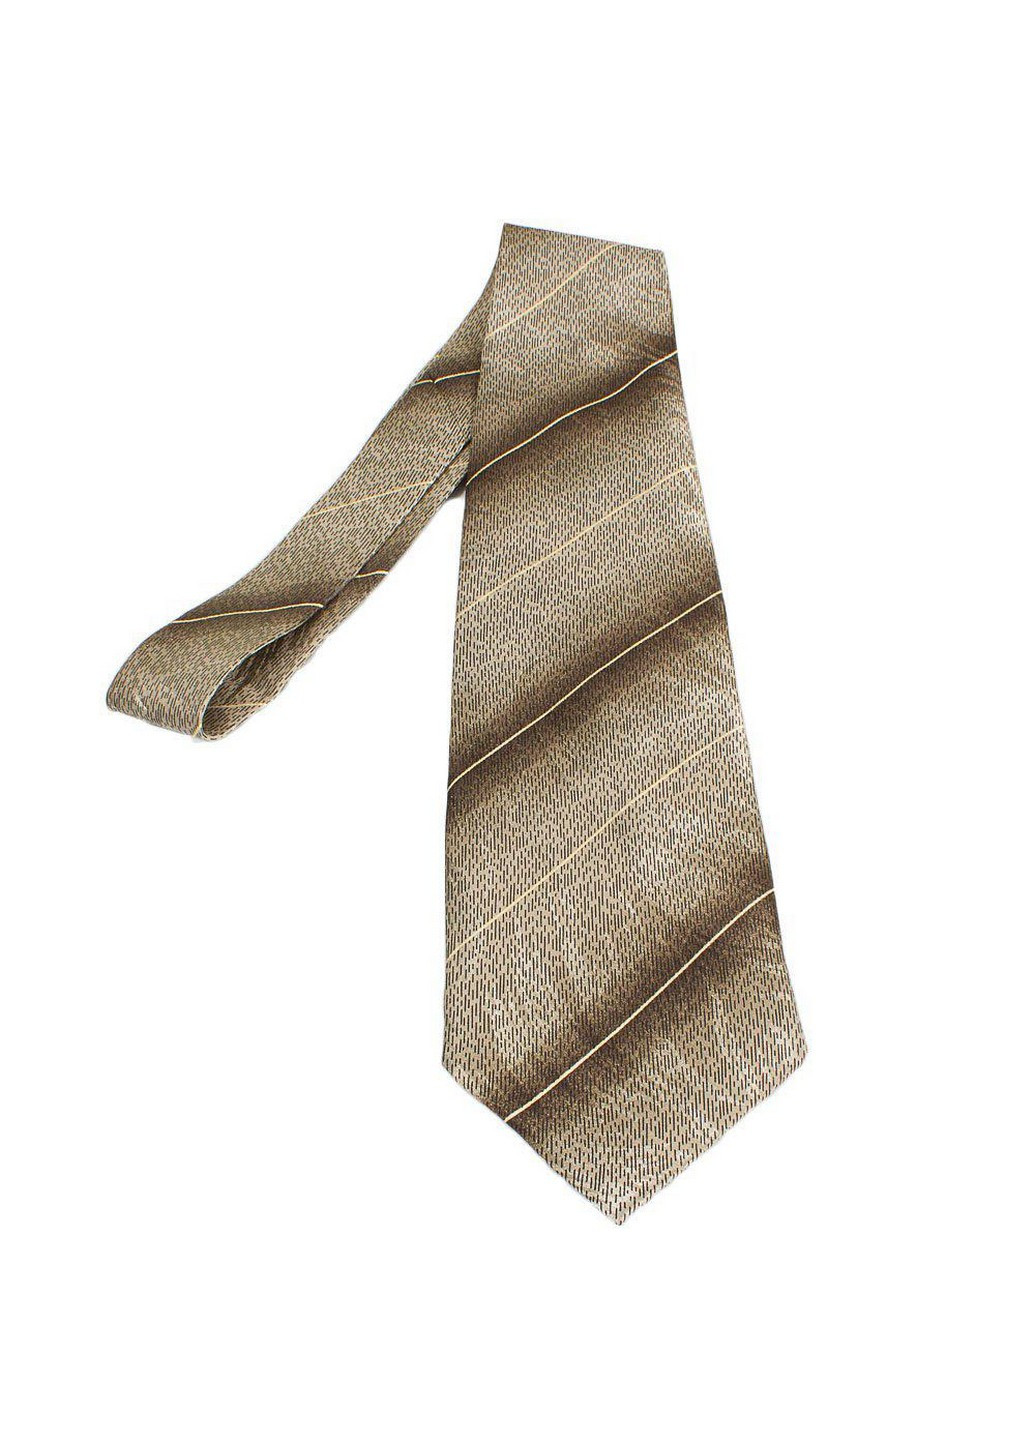 Шелковый галстук мужской 136 см Schonau & Houcken (206673015)